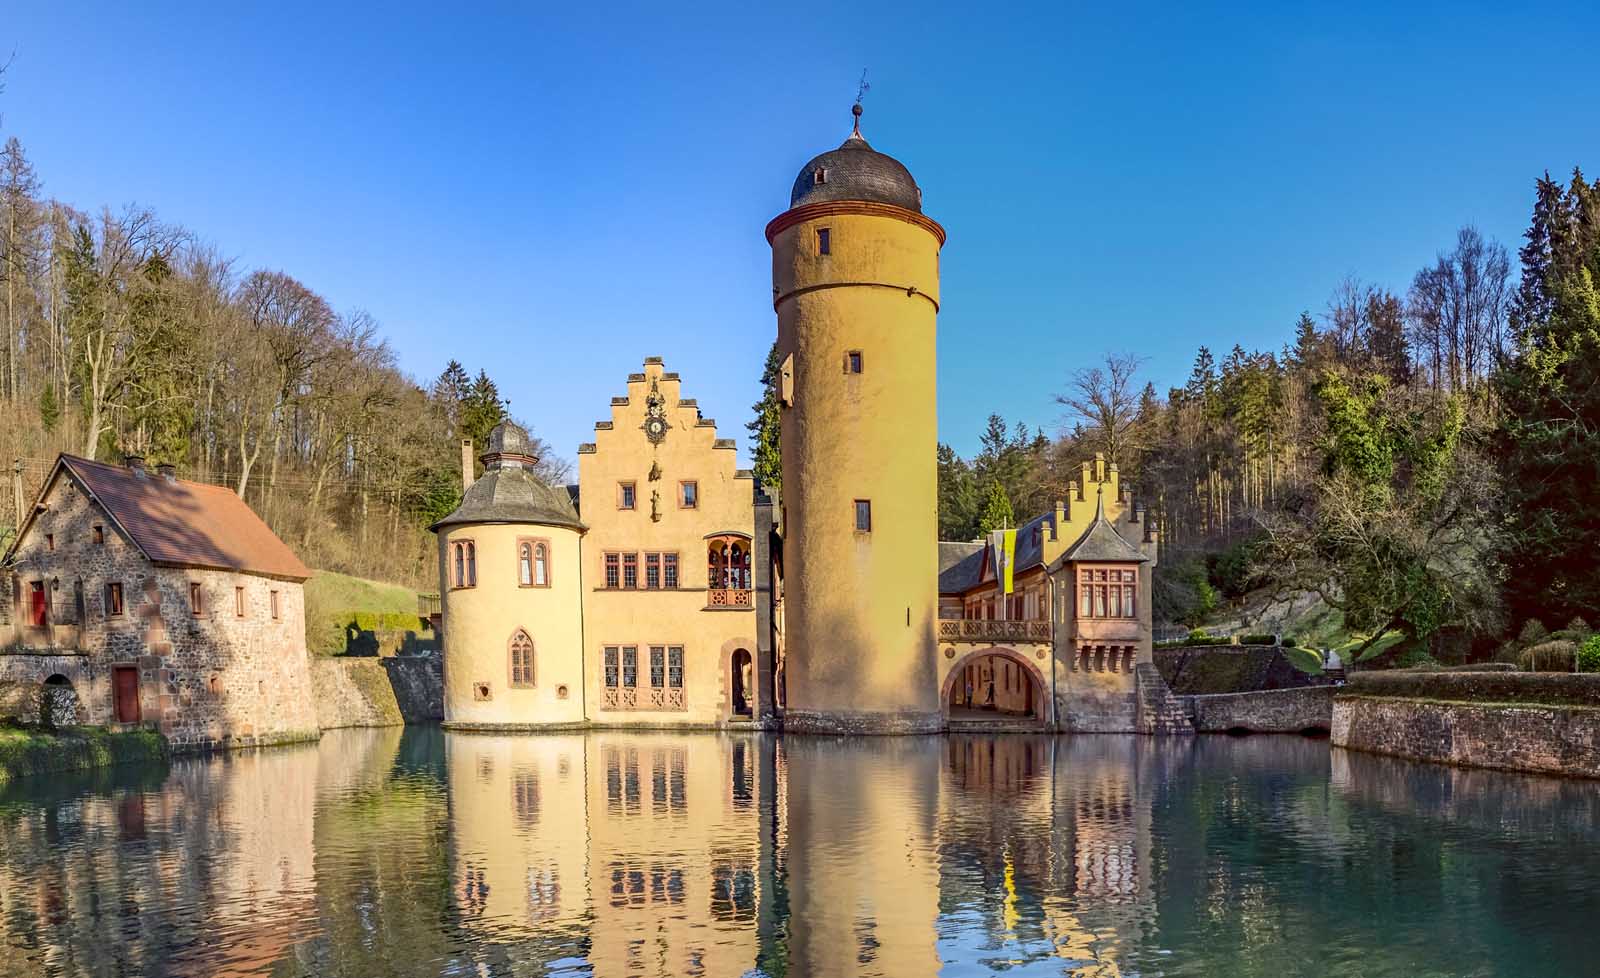 Beautiful castles in Germany Mespelbrunn Castle